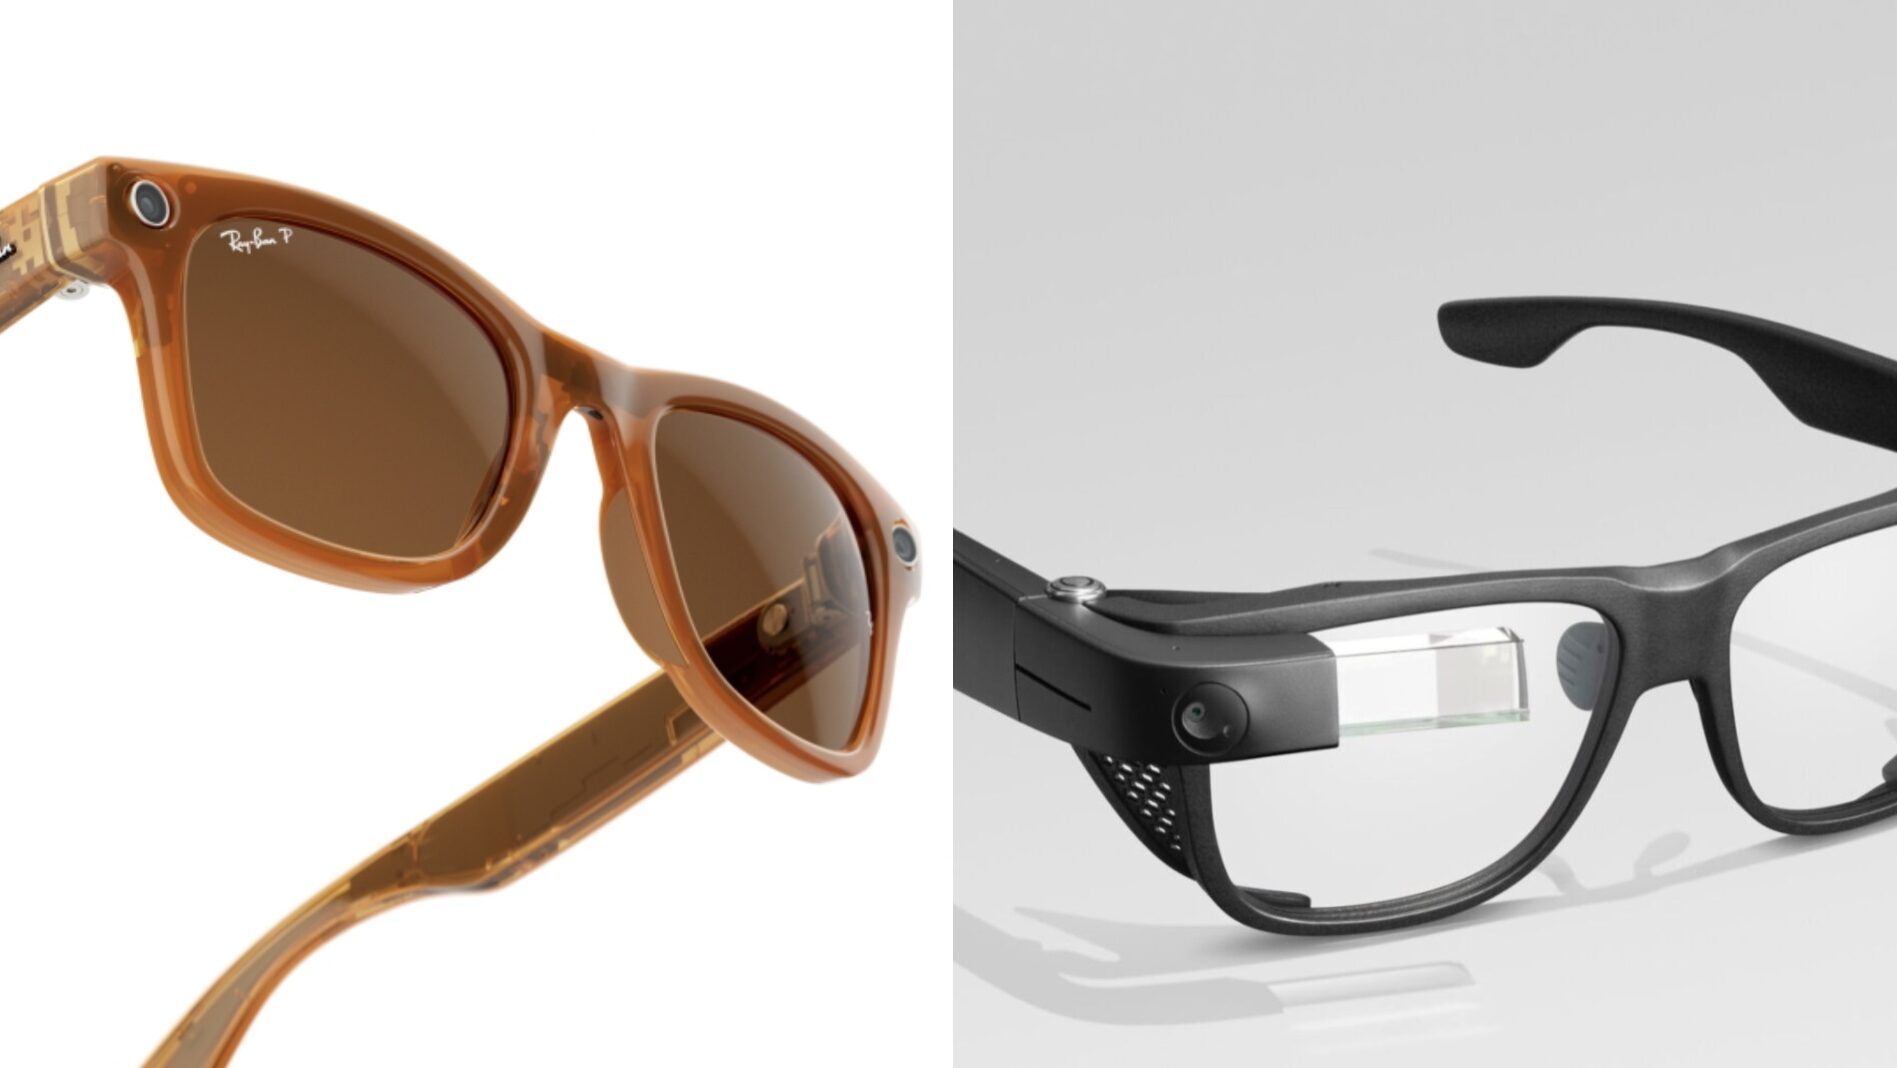 Meta Ray Bans and Google Glass